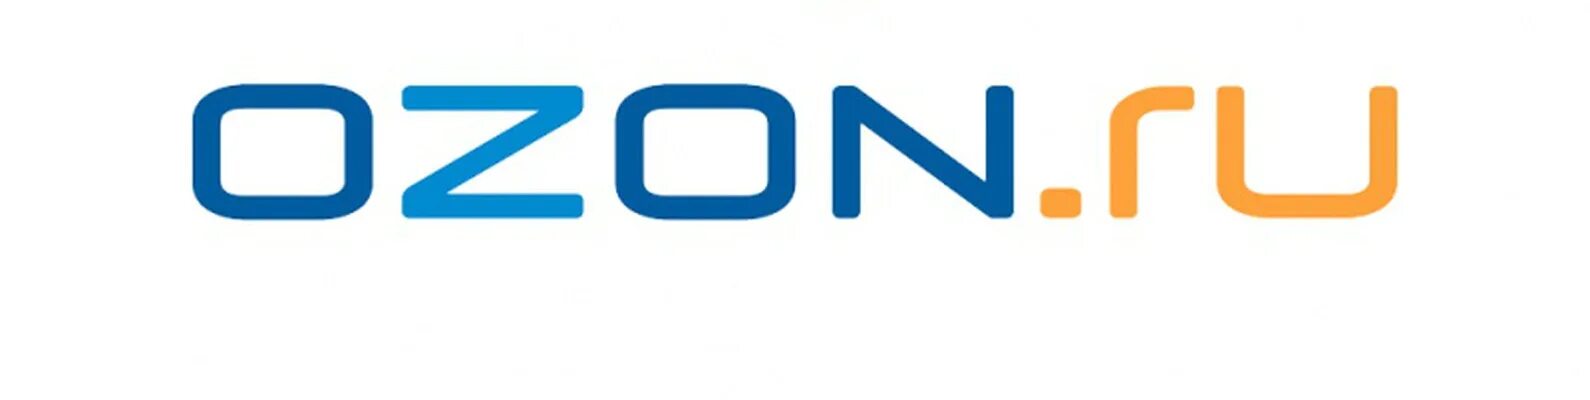 Ozon ru t 22e7lbq. Озон логотип. Магазин Озон логотип. Озон ру. OZON логотип PNG.